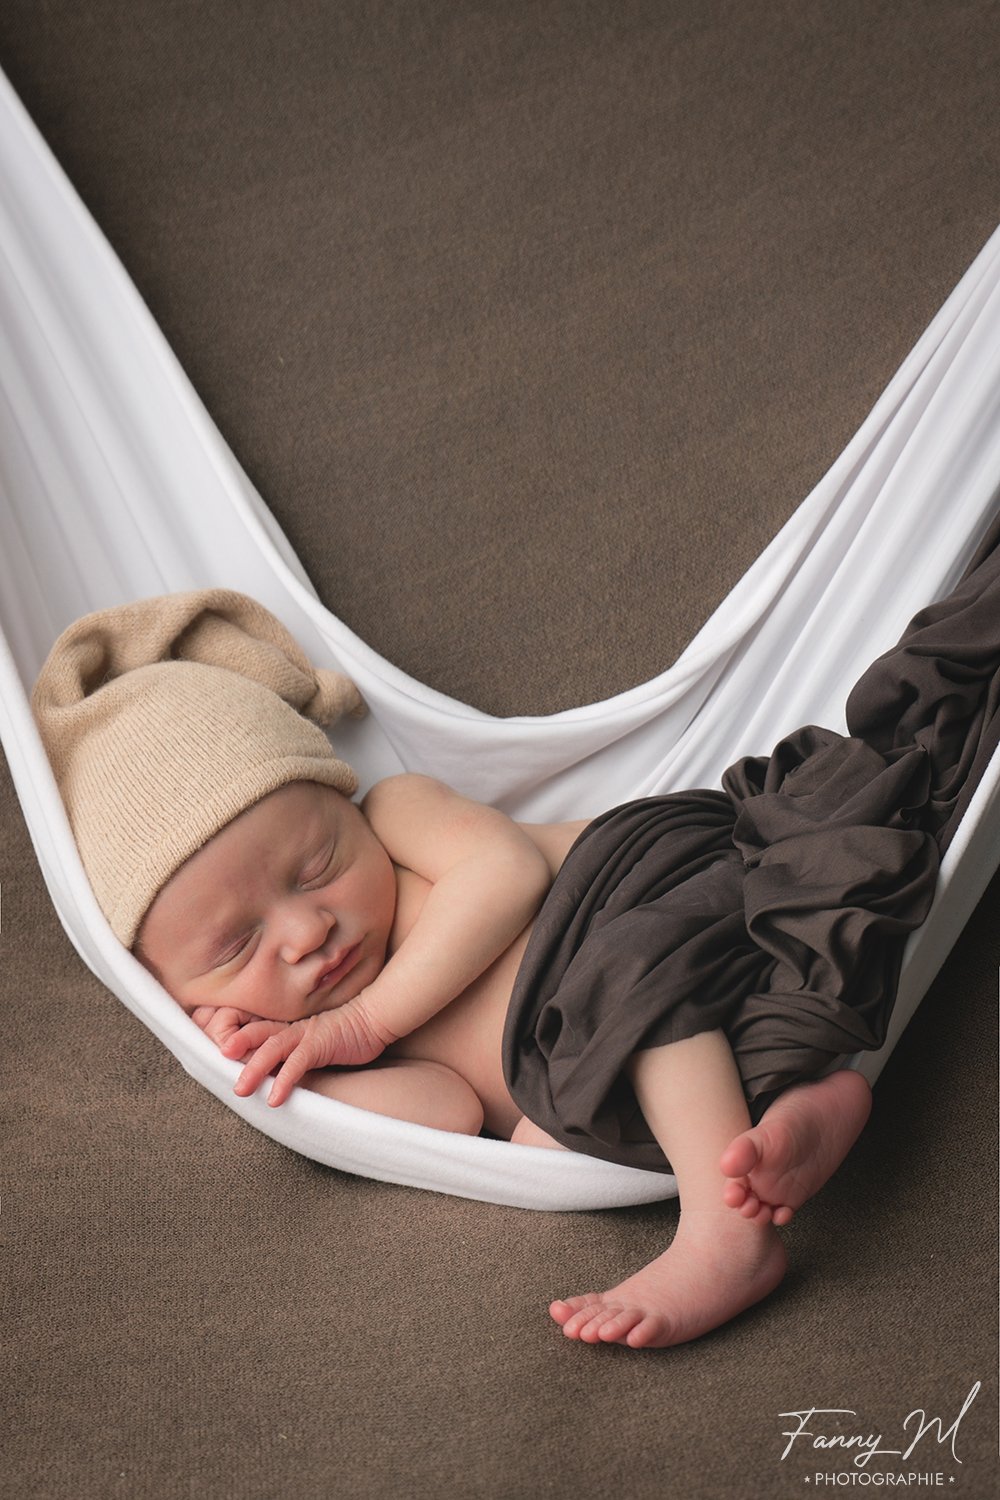 Pour photographie de nouveau-né Couverture de photographie pour nouveau-né